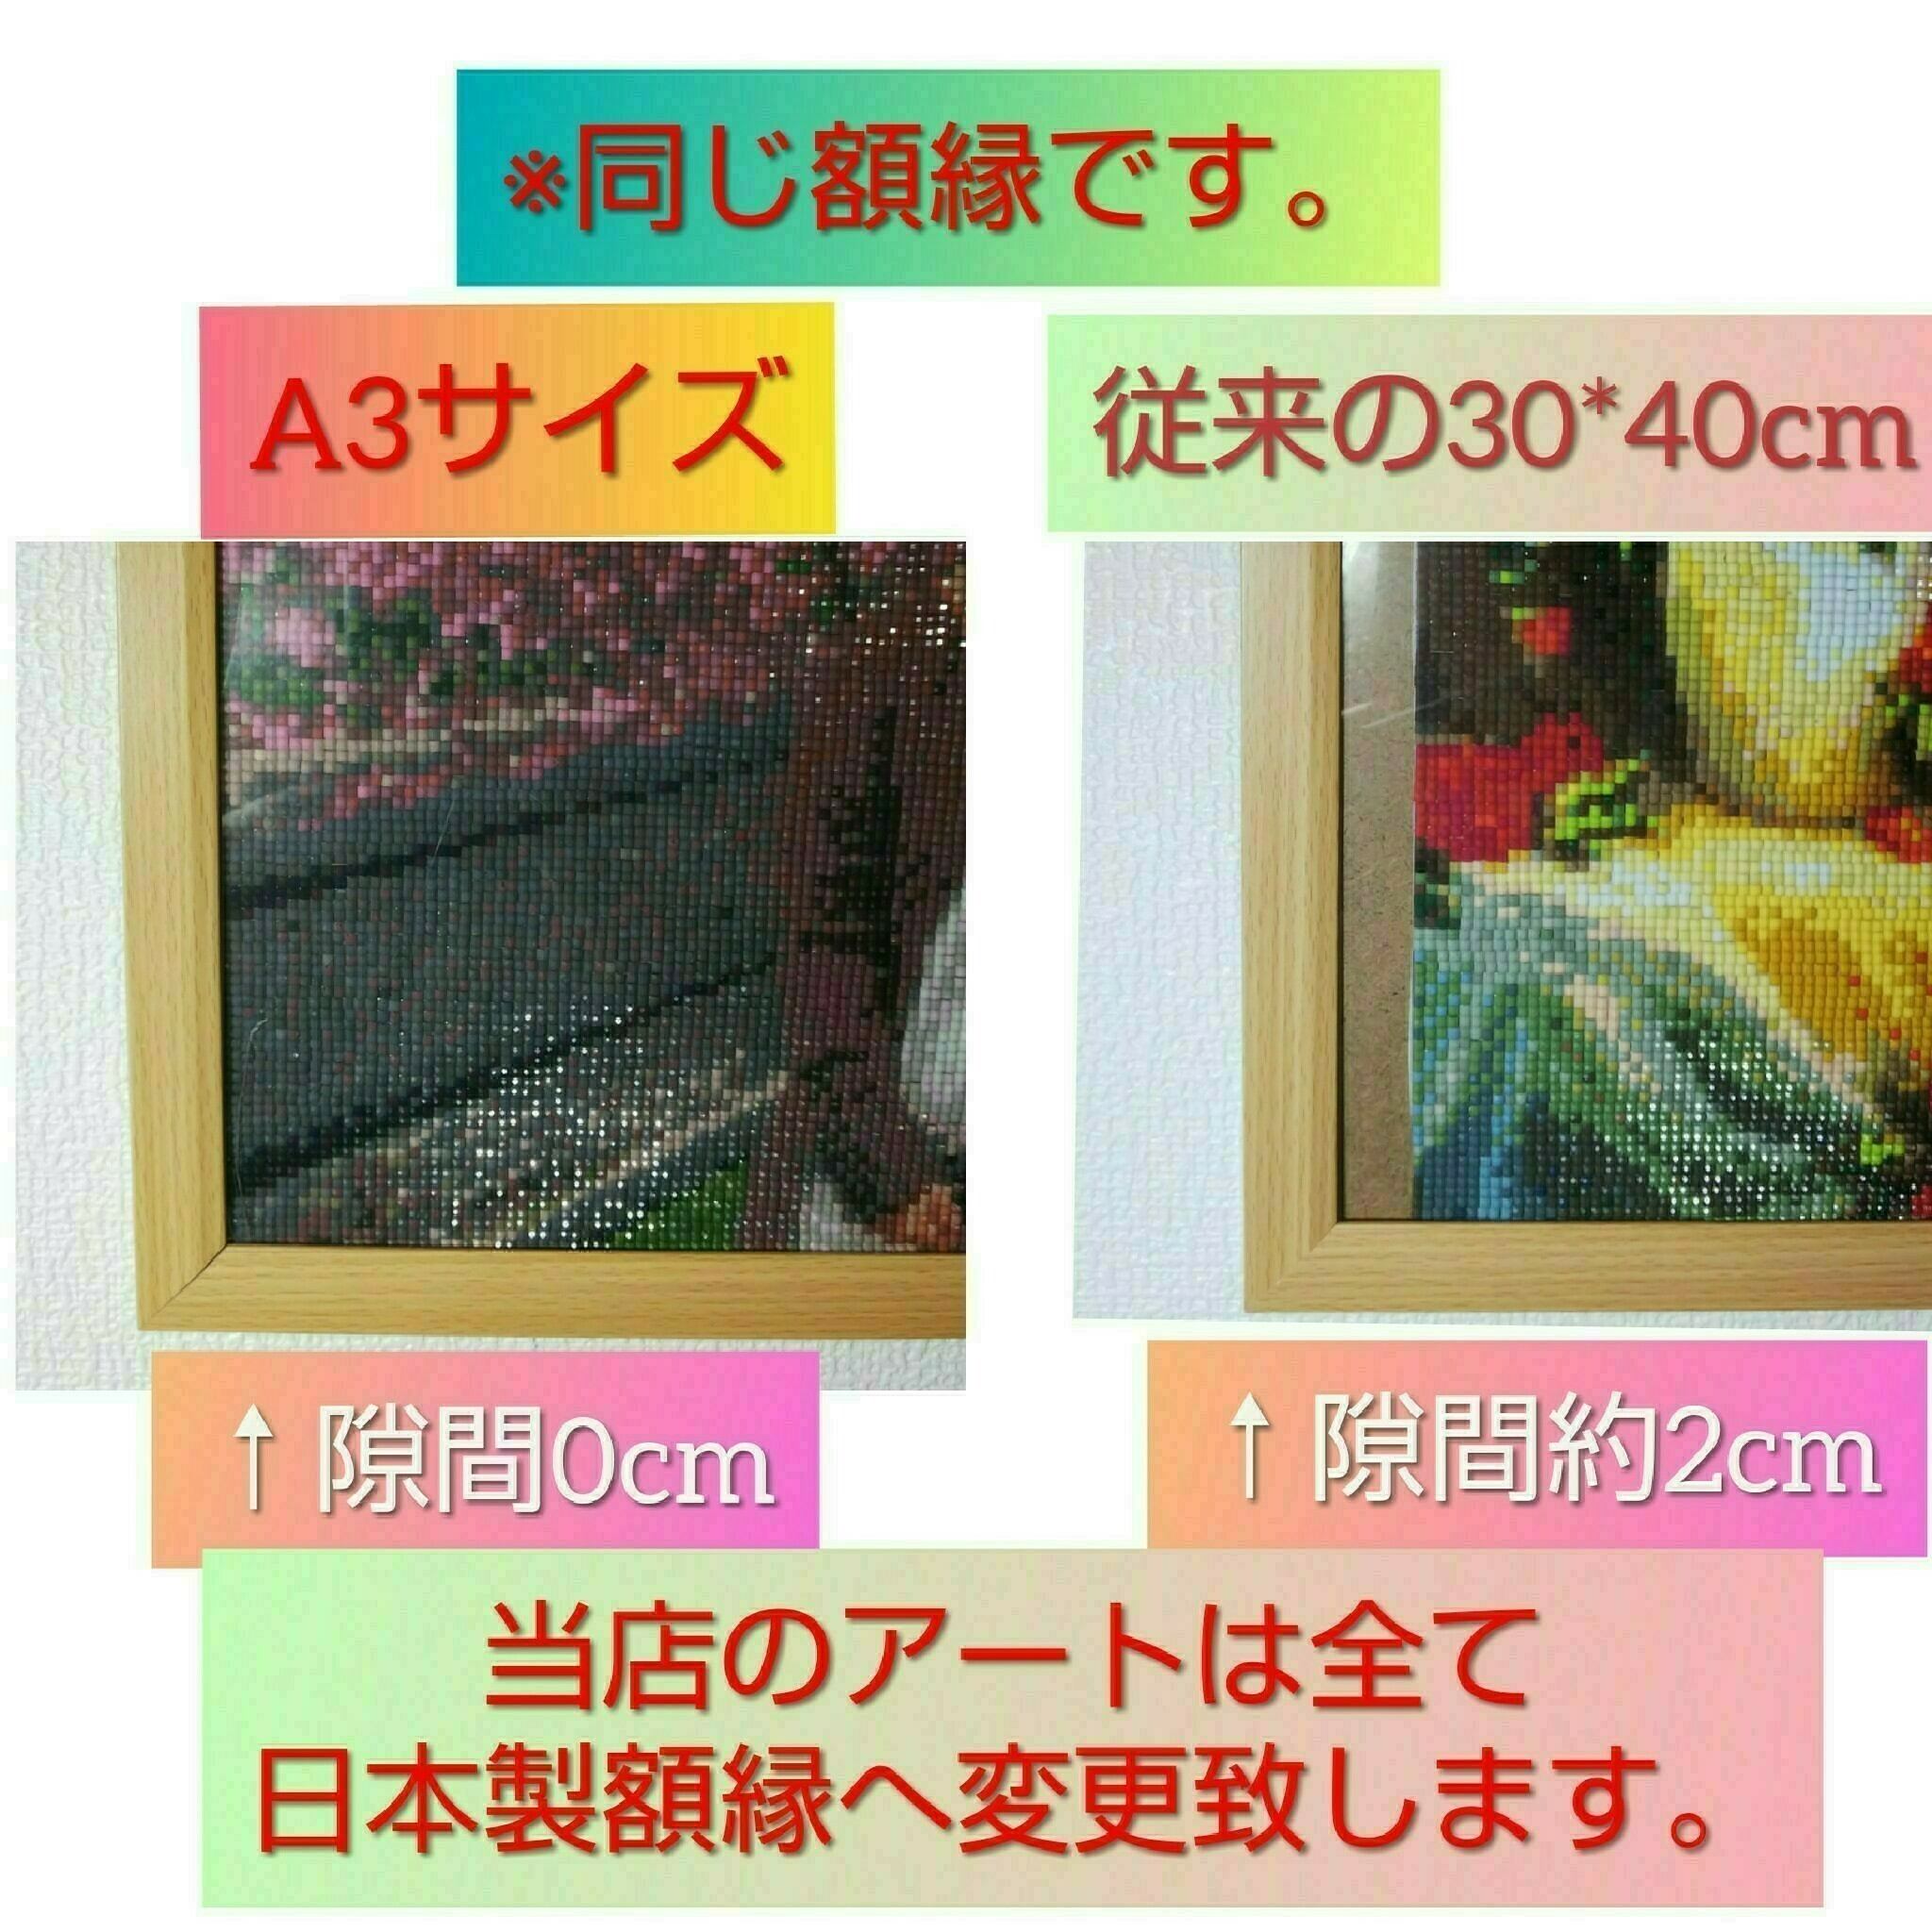 B2サイズ 丸型ビーズ【fan-003】フルダイヤモンドアート